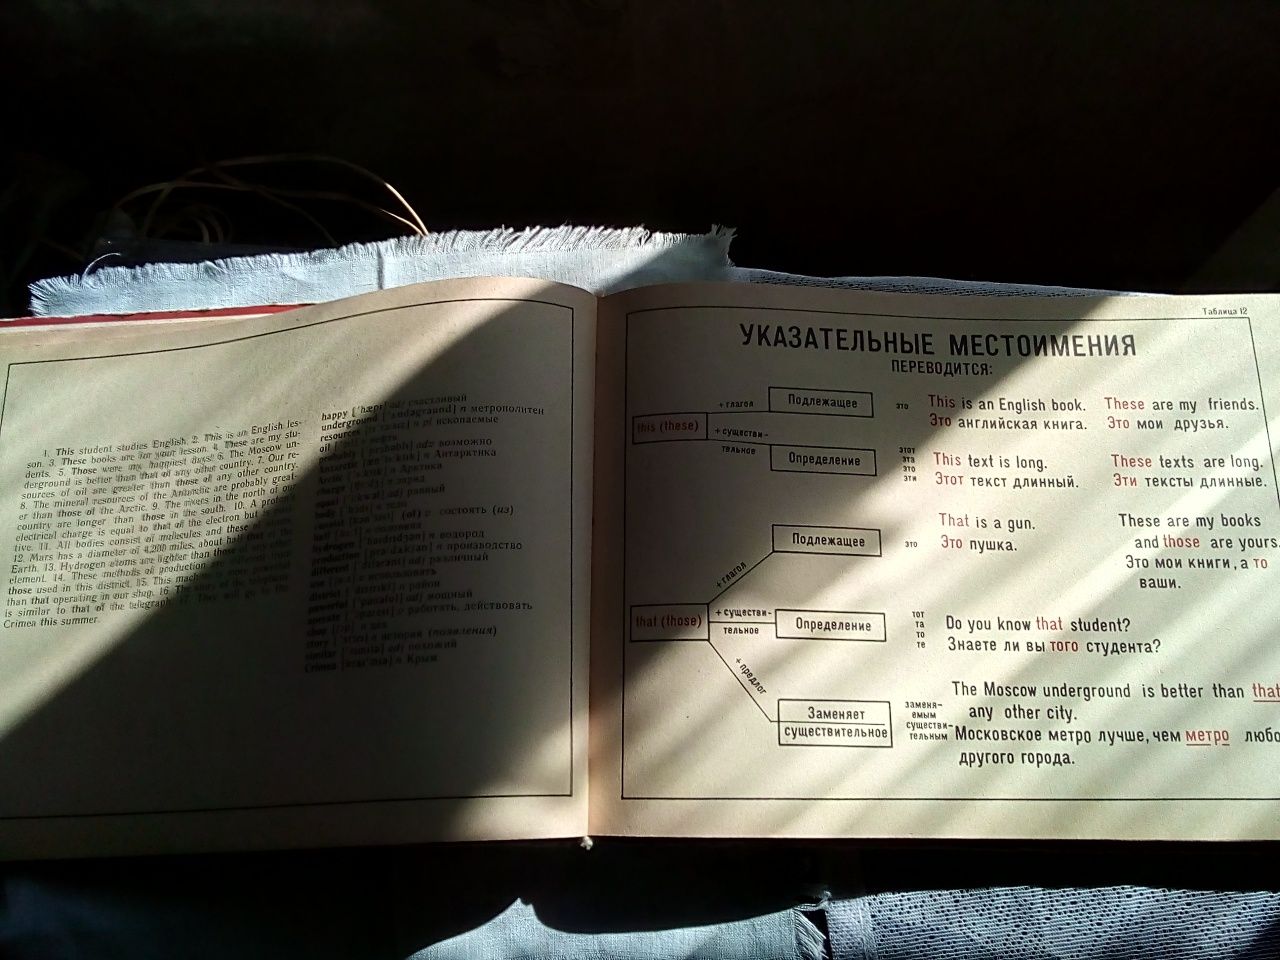 Книга "Граматика англійської мови у таблицях. А.Соколенко",1975р.